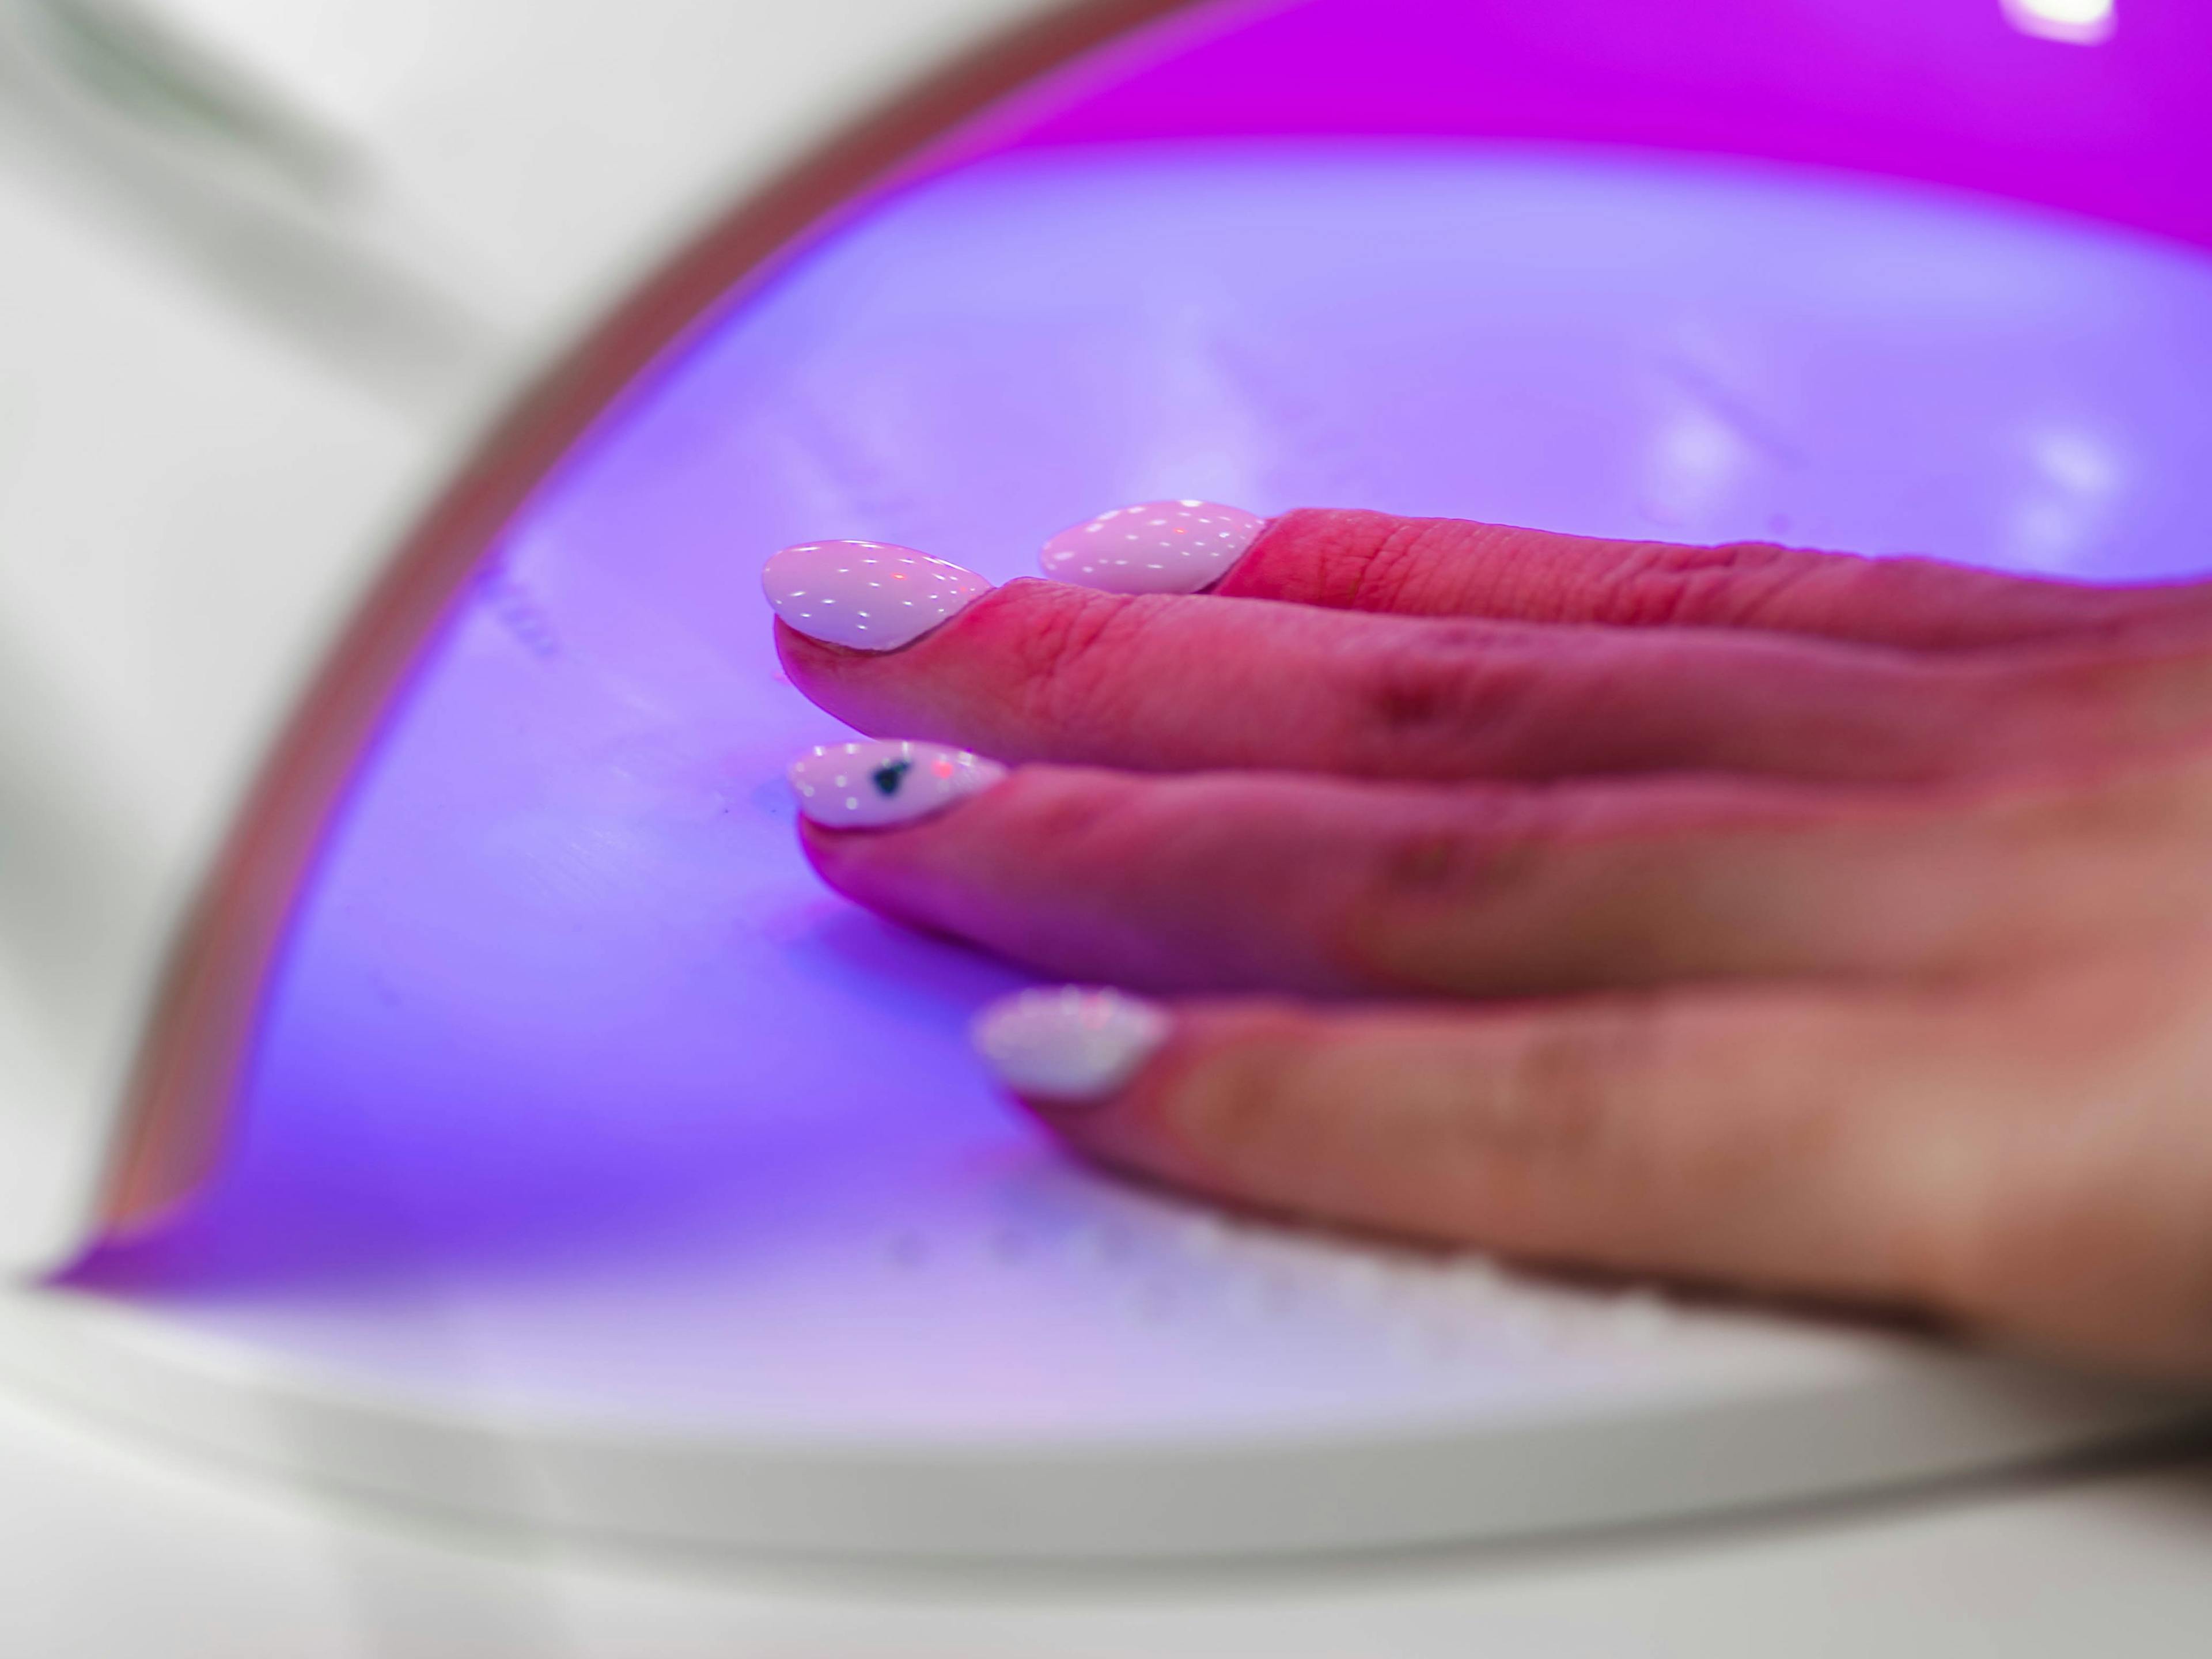 utwardzanie wartwy lakieru pod lampą UV podczas manicure hybrydowego zbliżenie